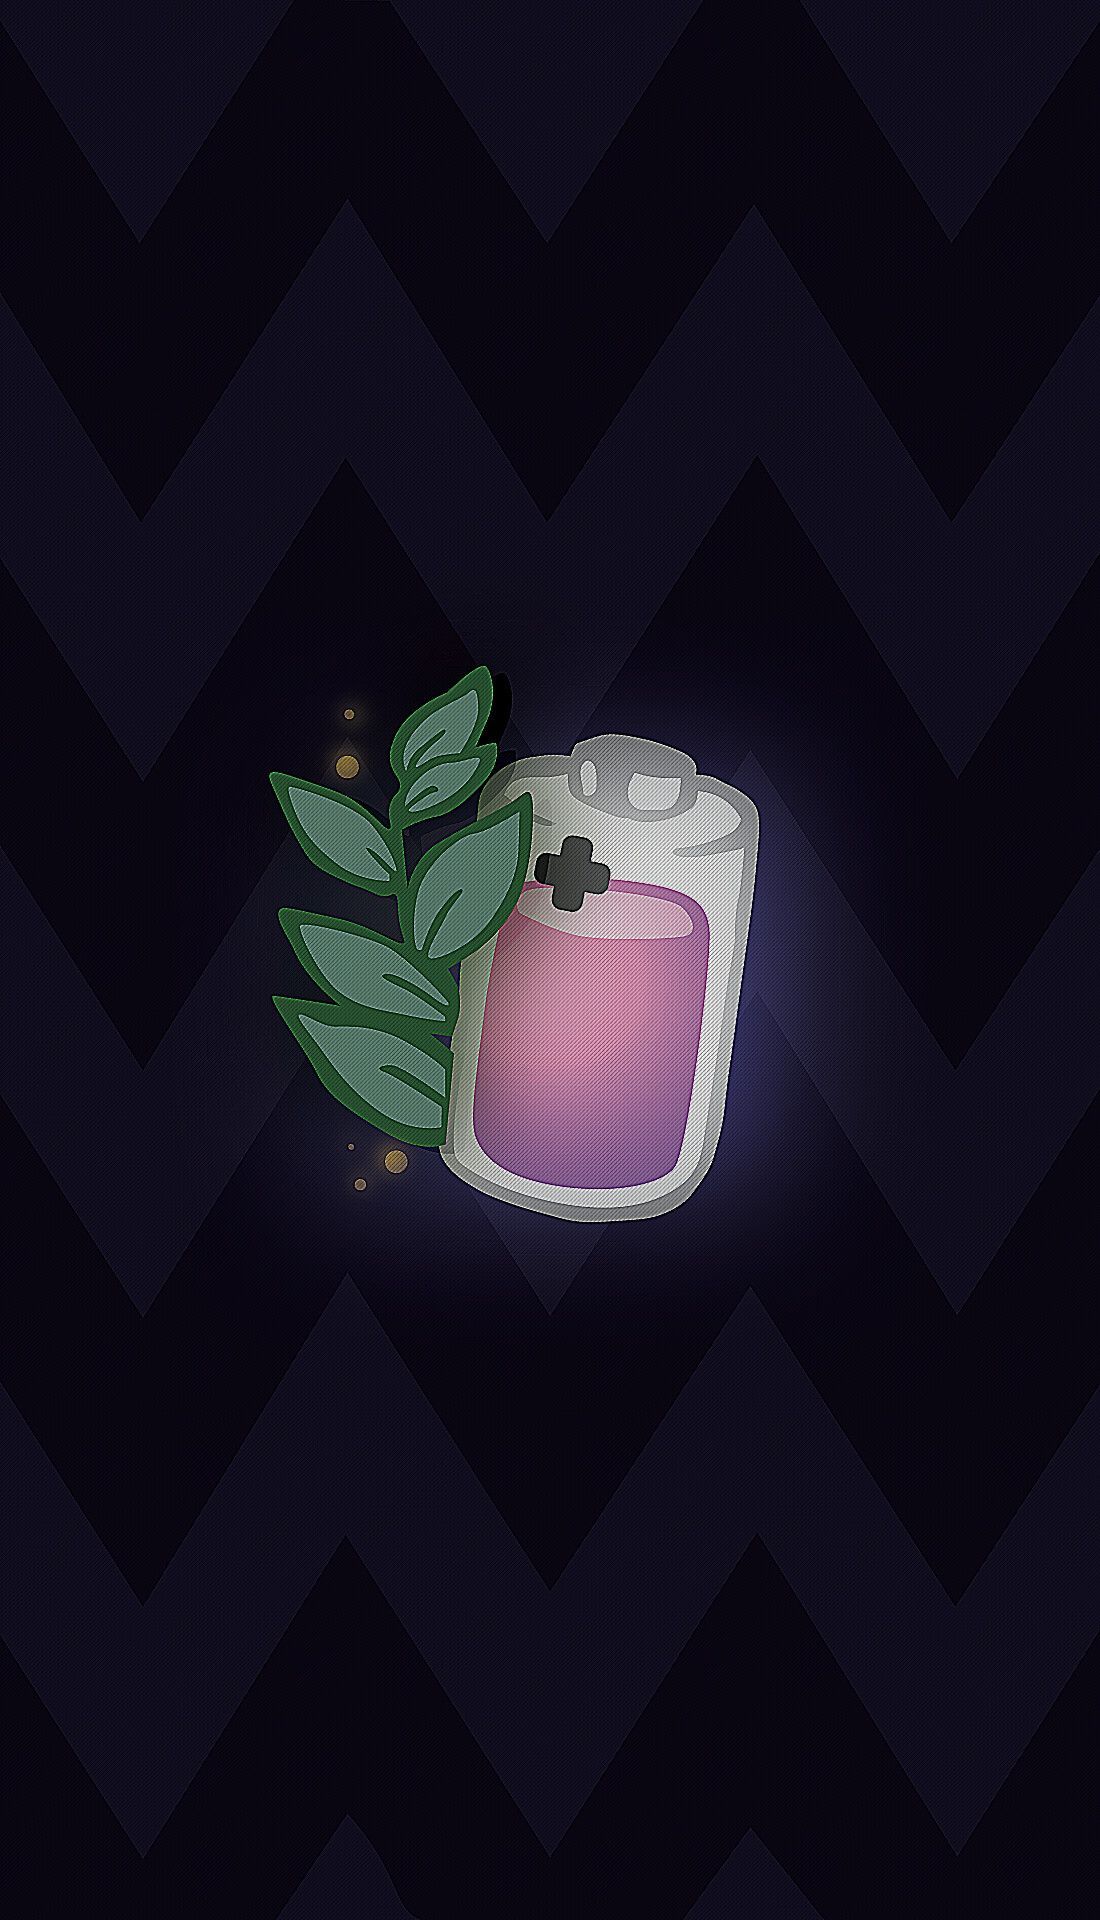 A purple bottle with green leaves on it - Bestie